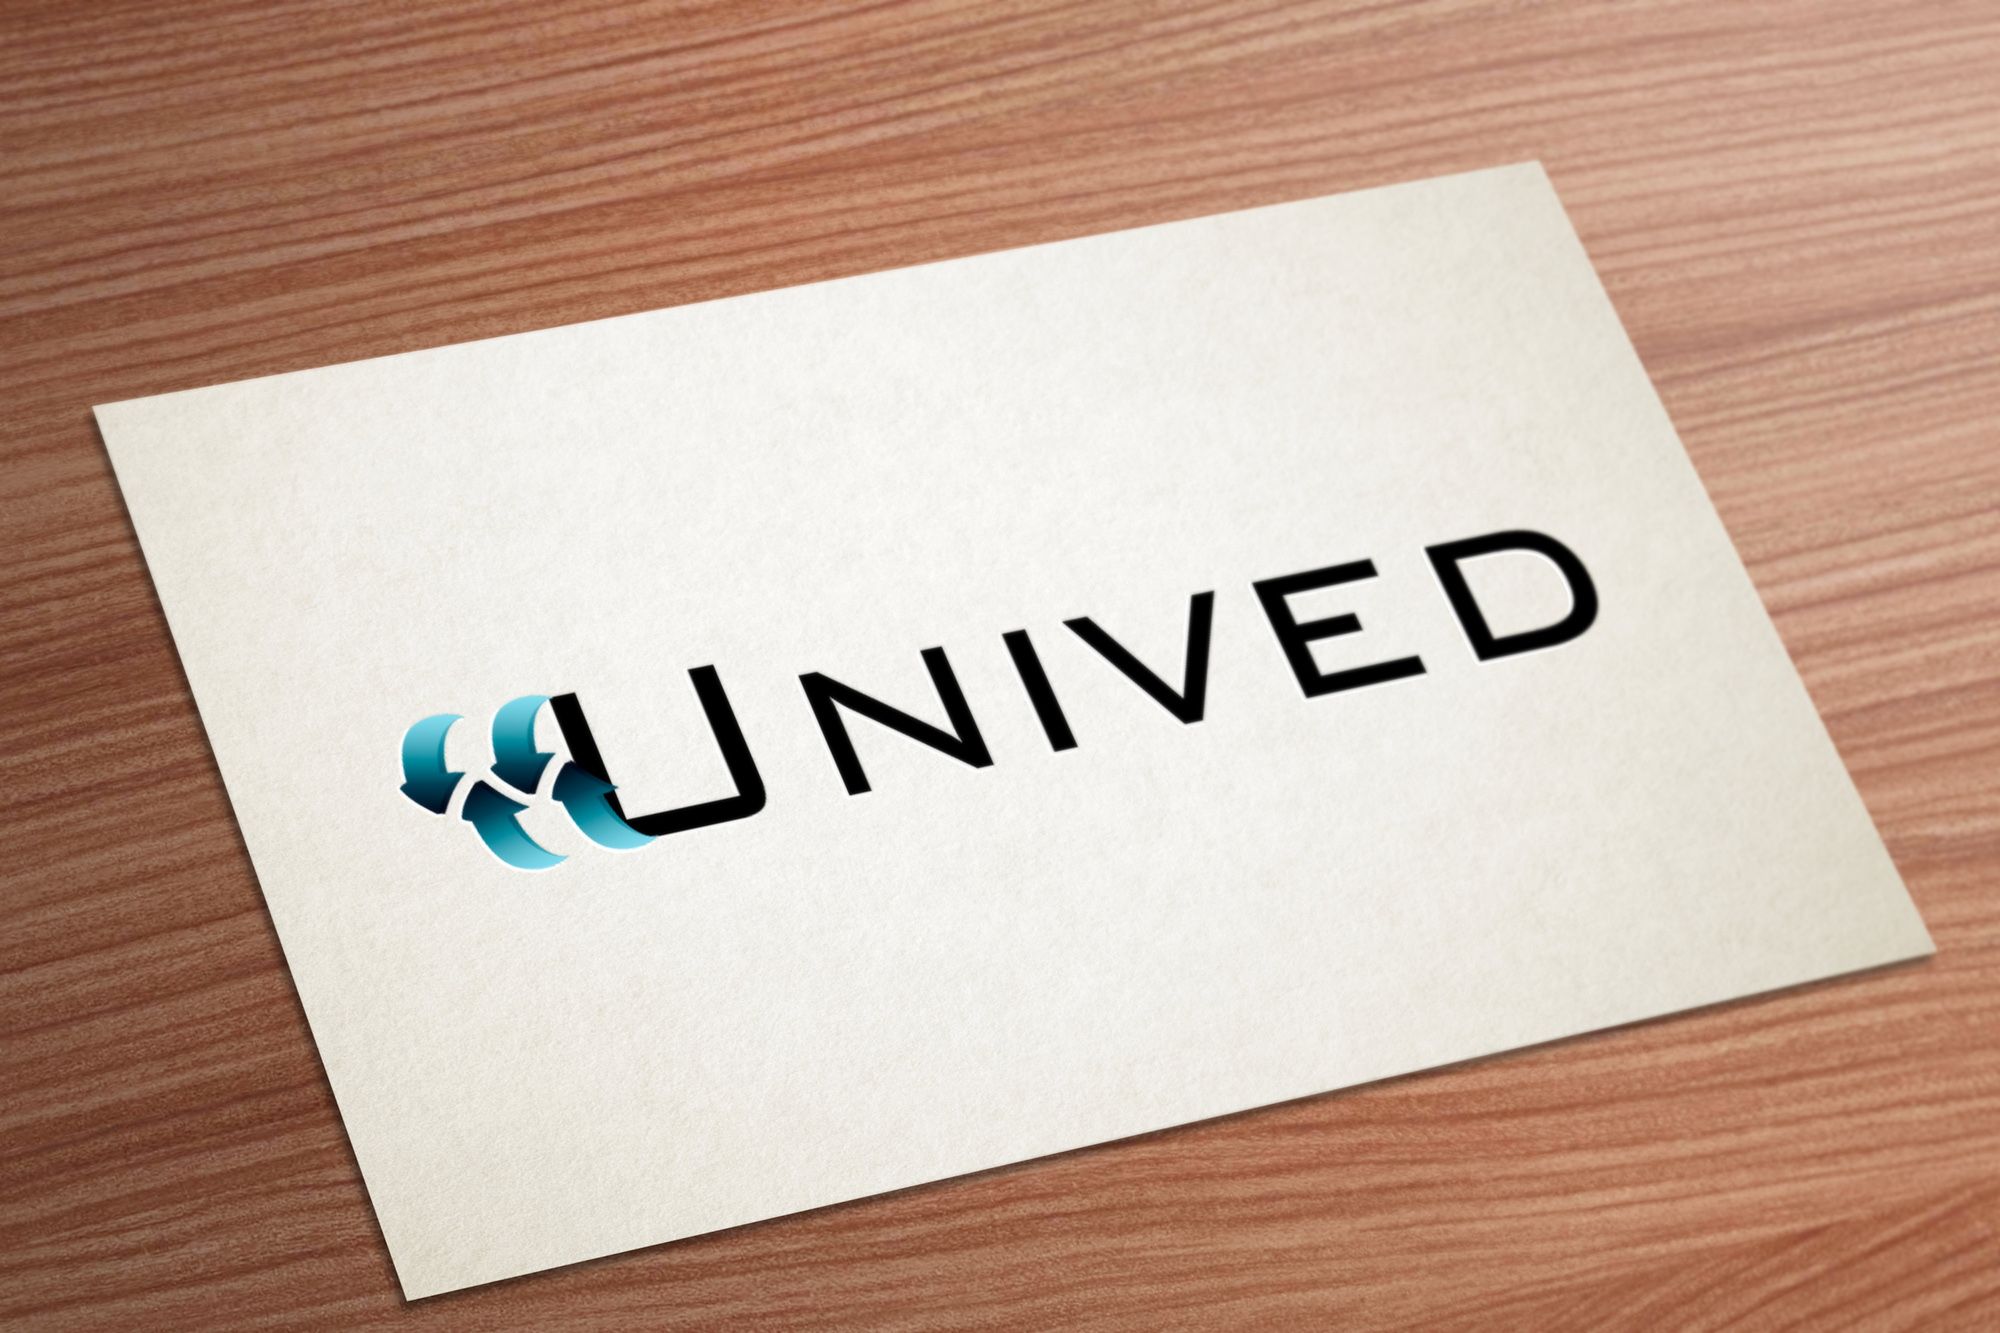 Логотип для логистической компании Unived - дизайнер pups42